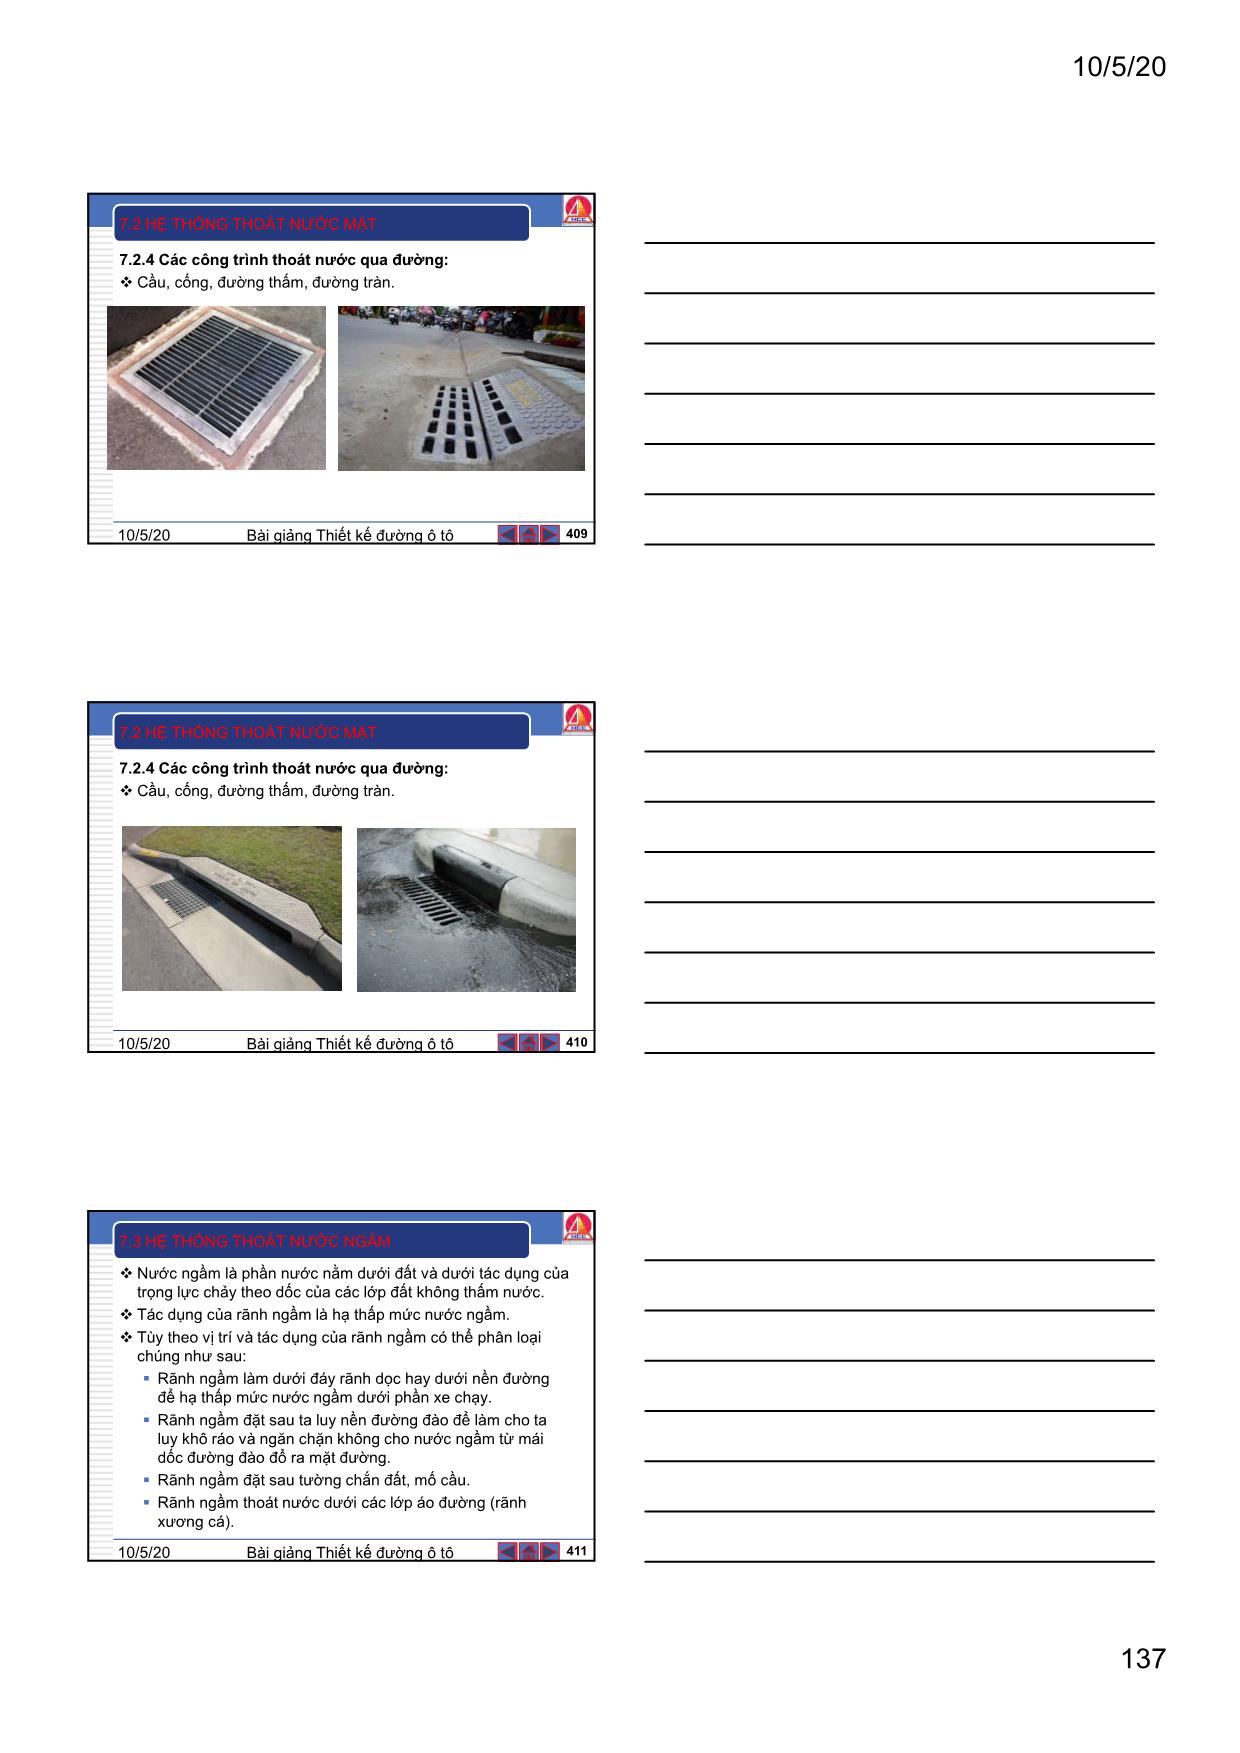 Bài giảng Thiết kế đường ô tô - Chương 7: Thiết kế hệ thống thoát nước mặt và thoát nước ngầm trang 9